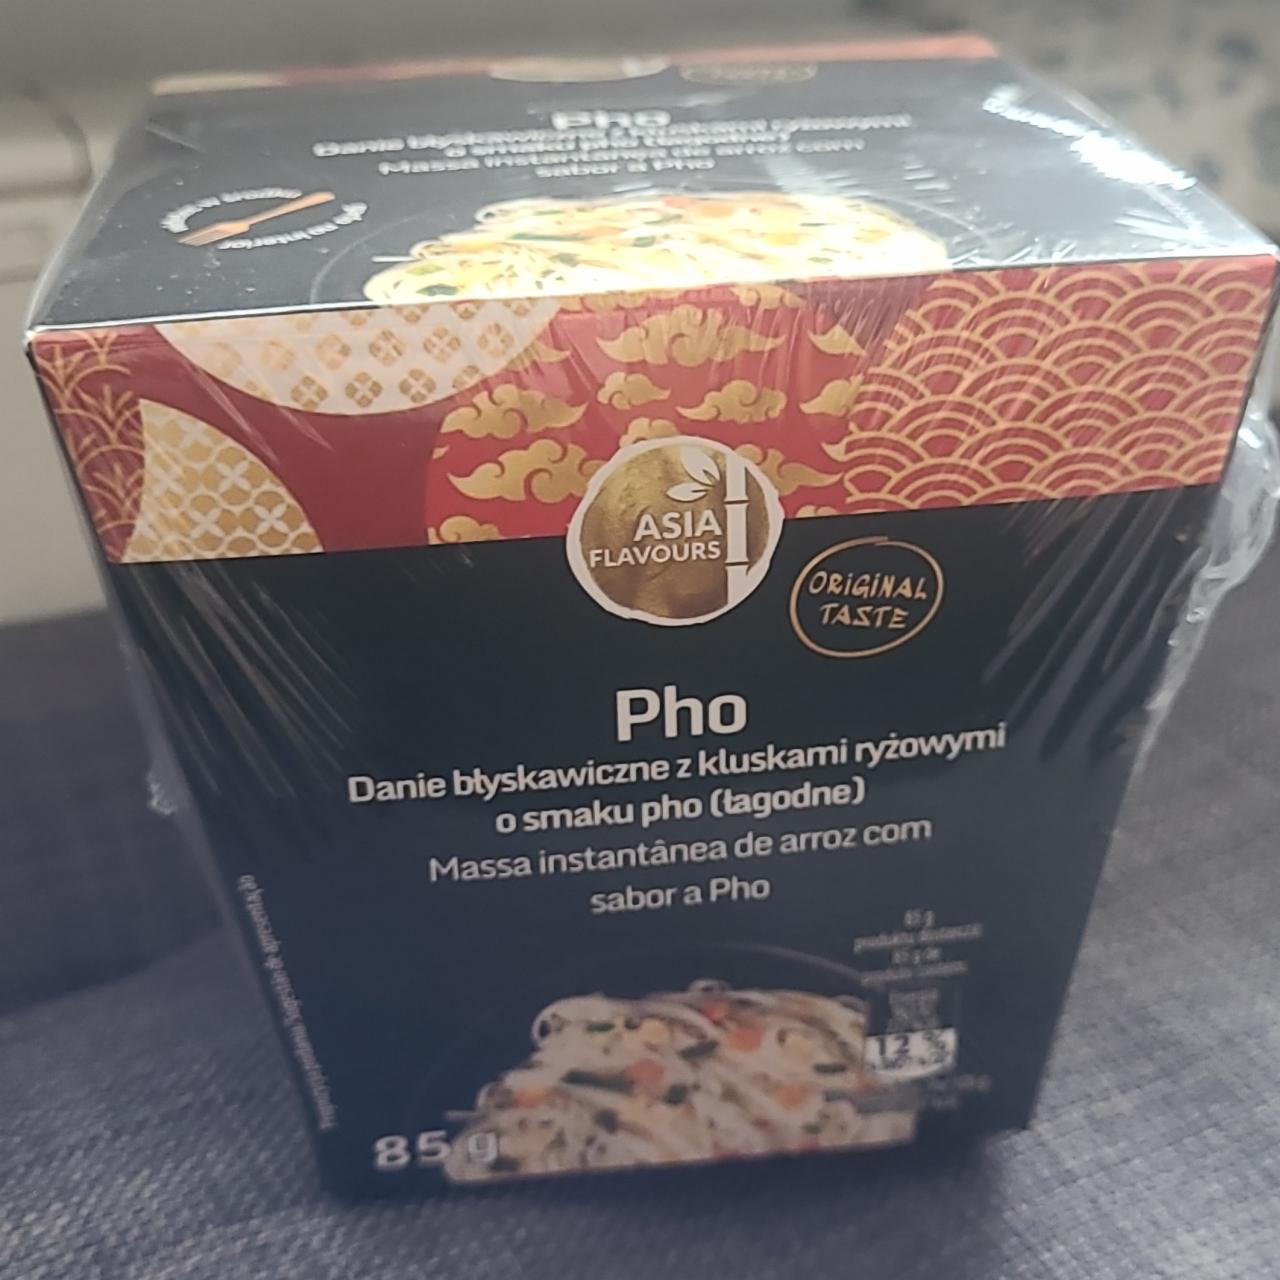 Zdjęcia - Pho Danie błyskawiczne z kluskam ryżowymi o smaku pho Asia Flavours